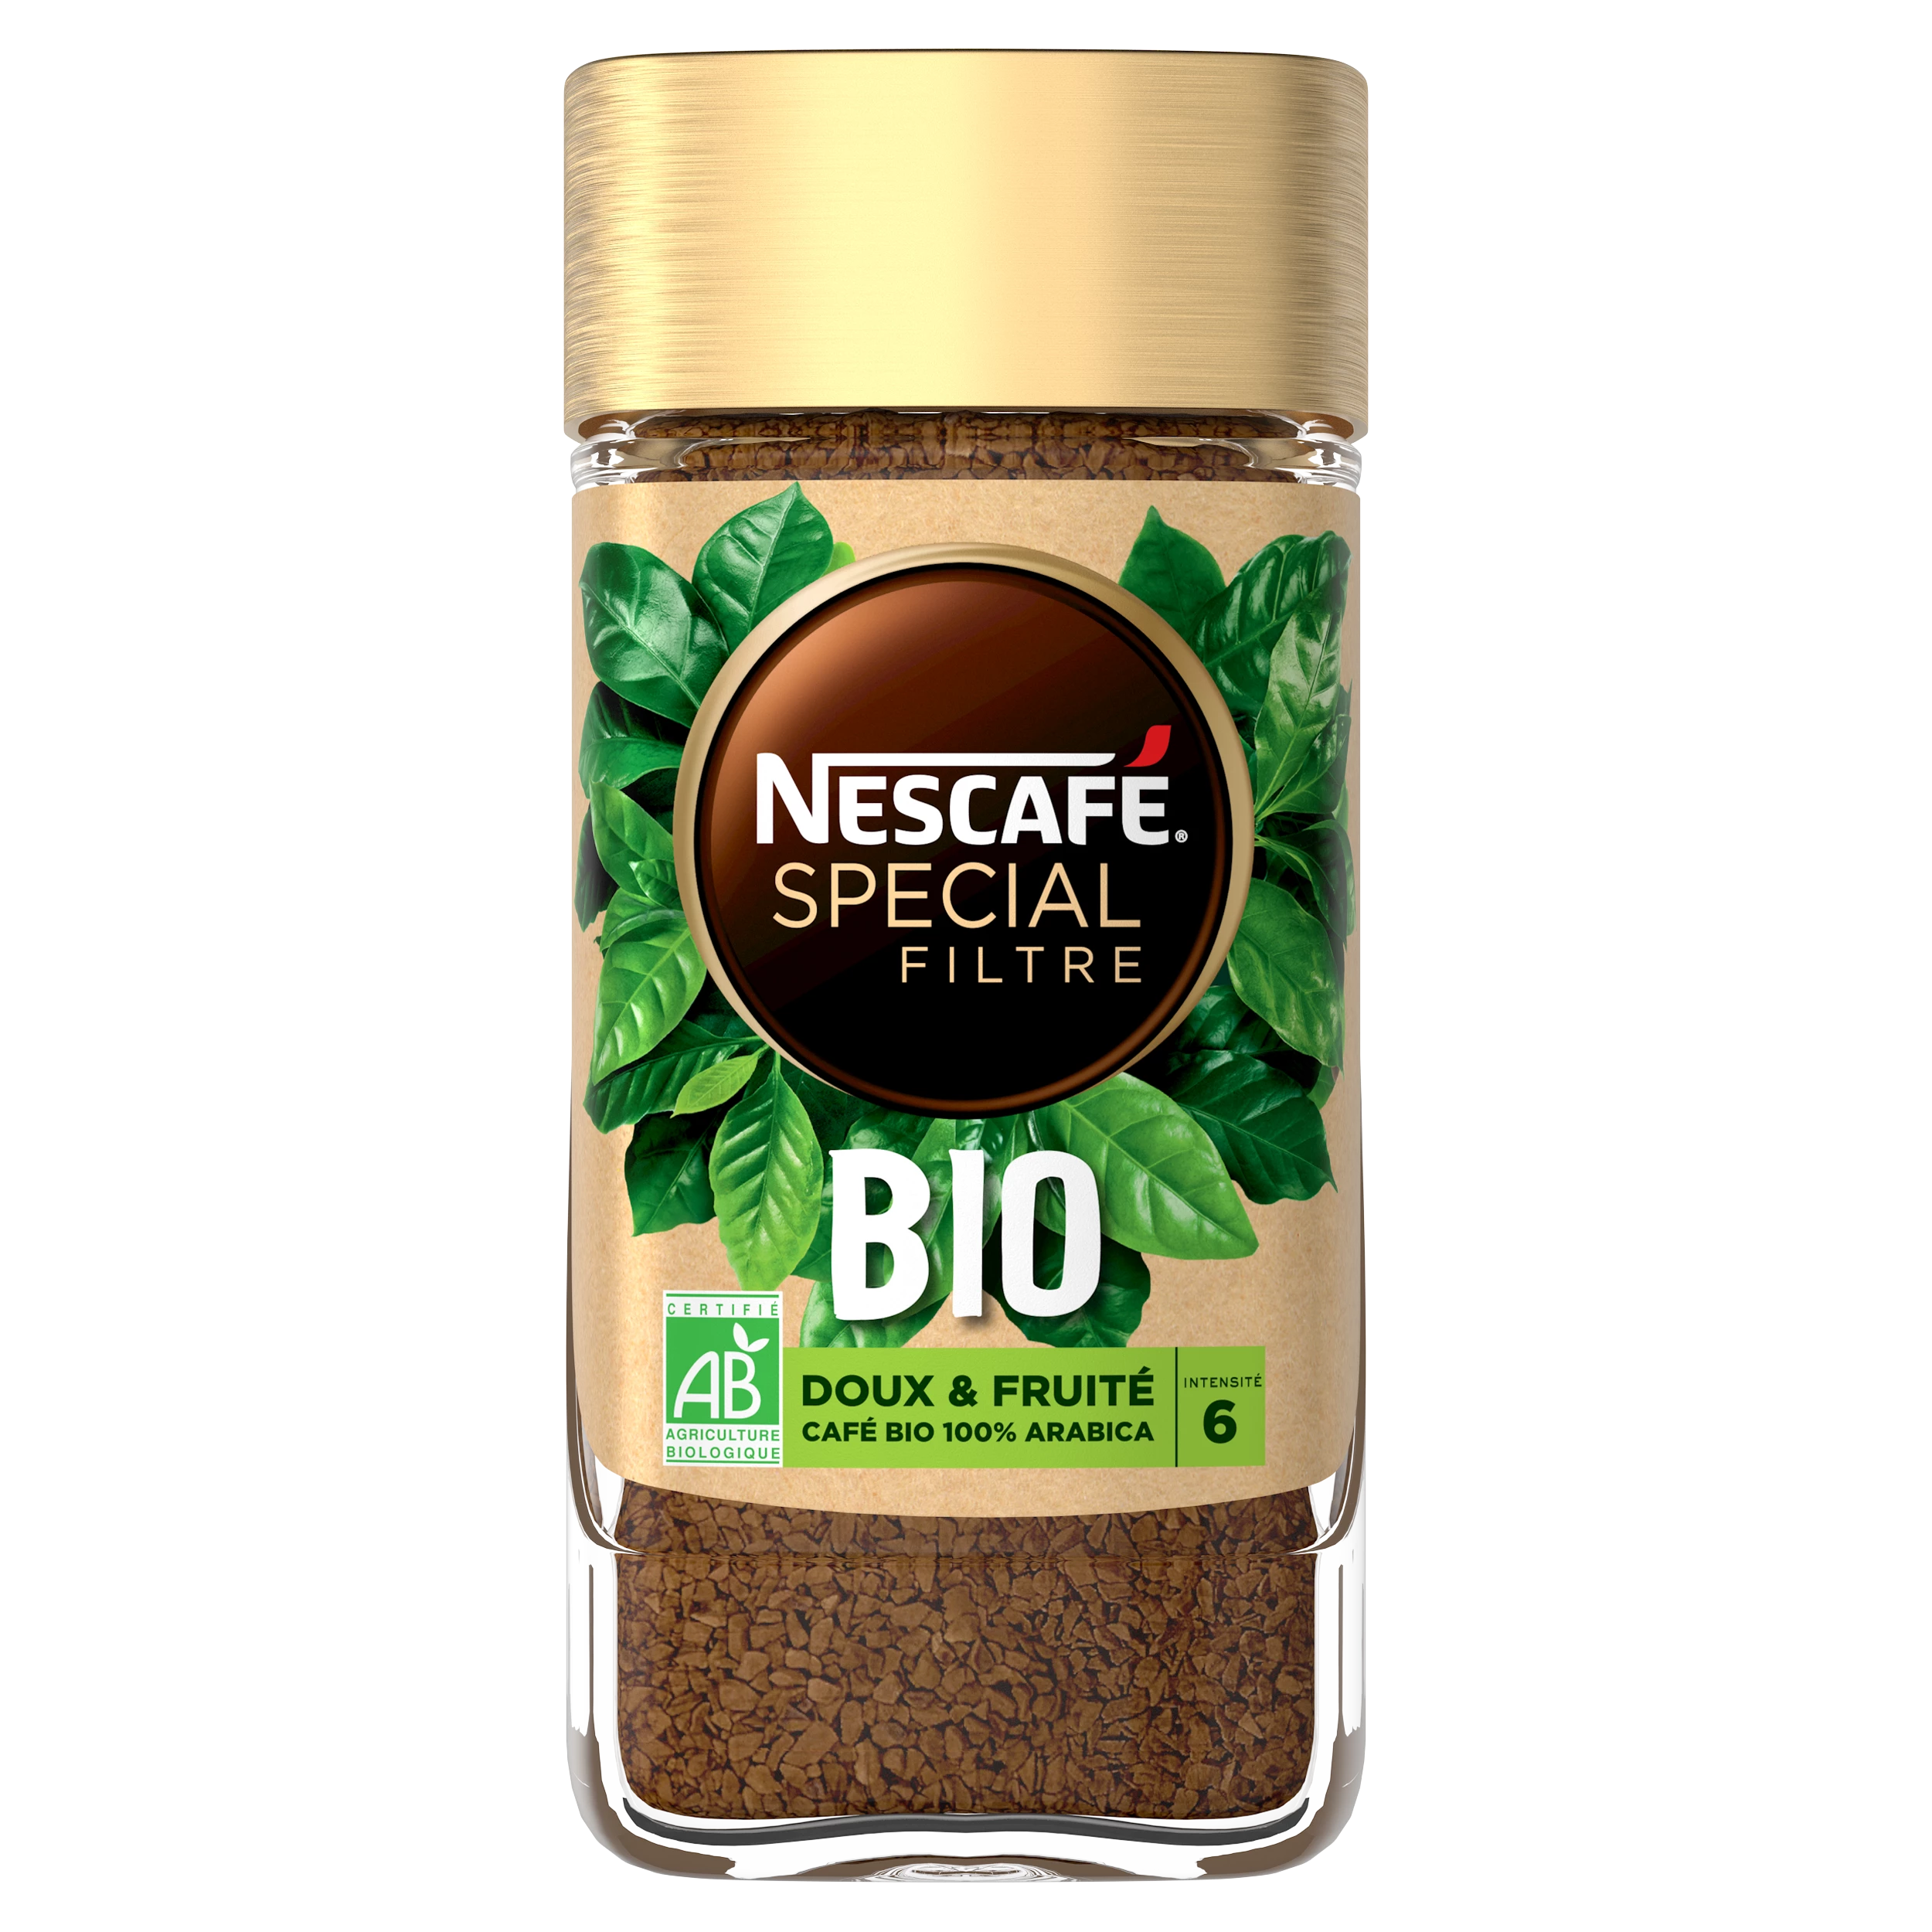 Nescafe Special Filter Bio 90g